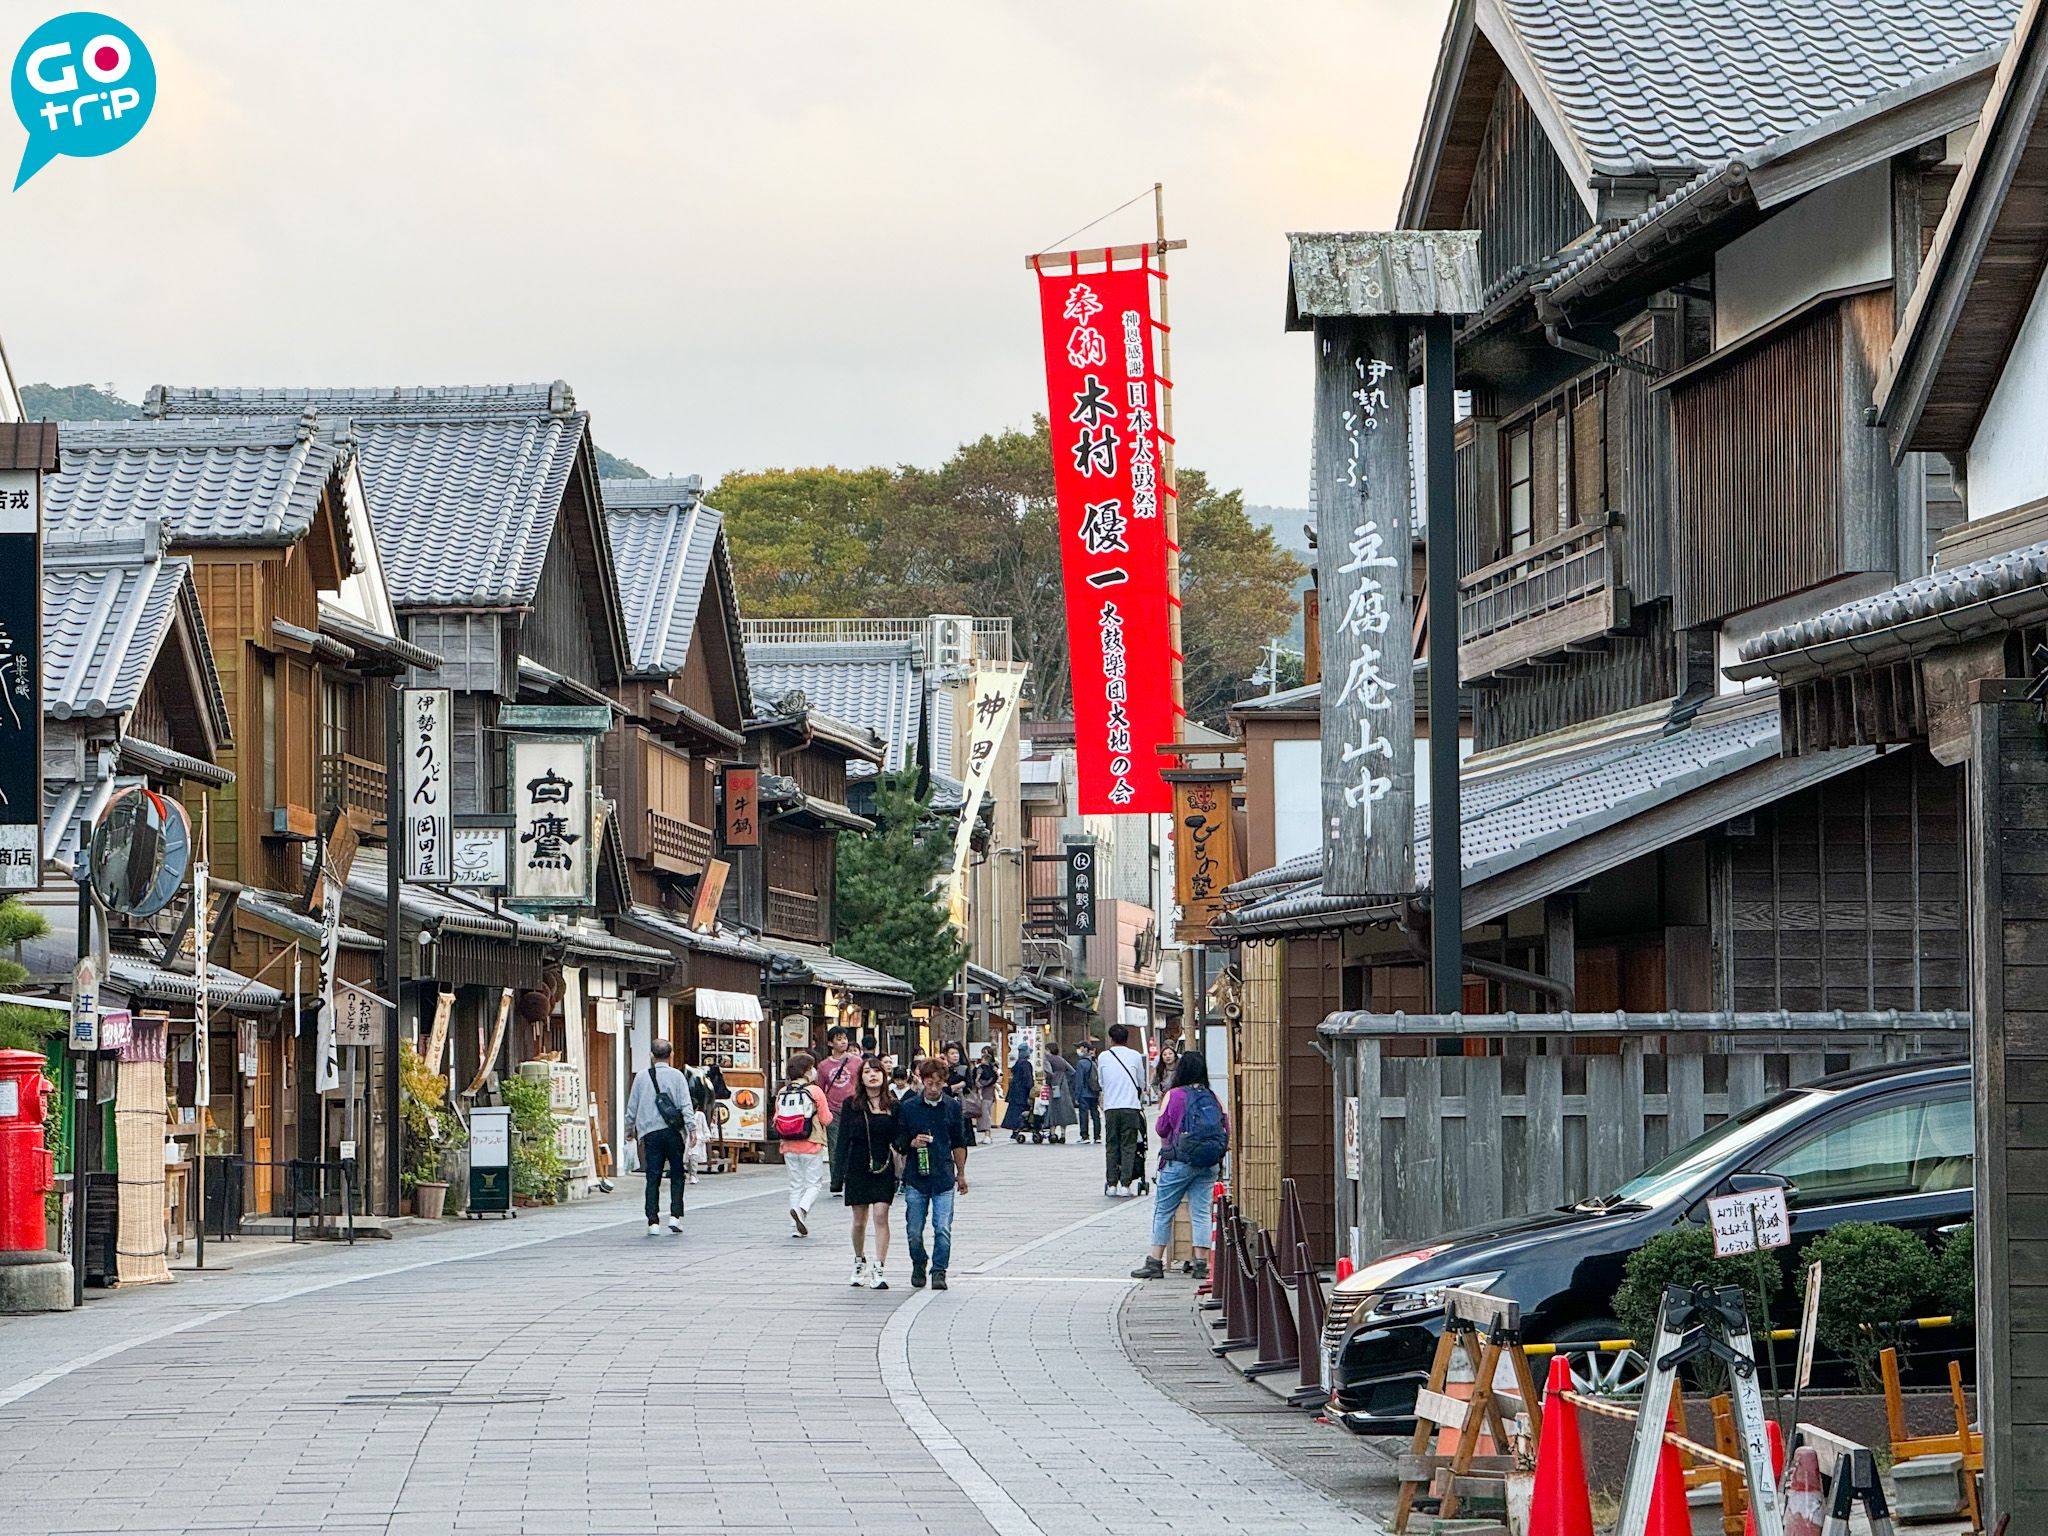 名古屋自由行 托福橫丁和厄除町兩旁的建築仍保留著江戶風情，而且有大量商店和食店。